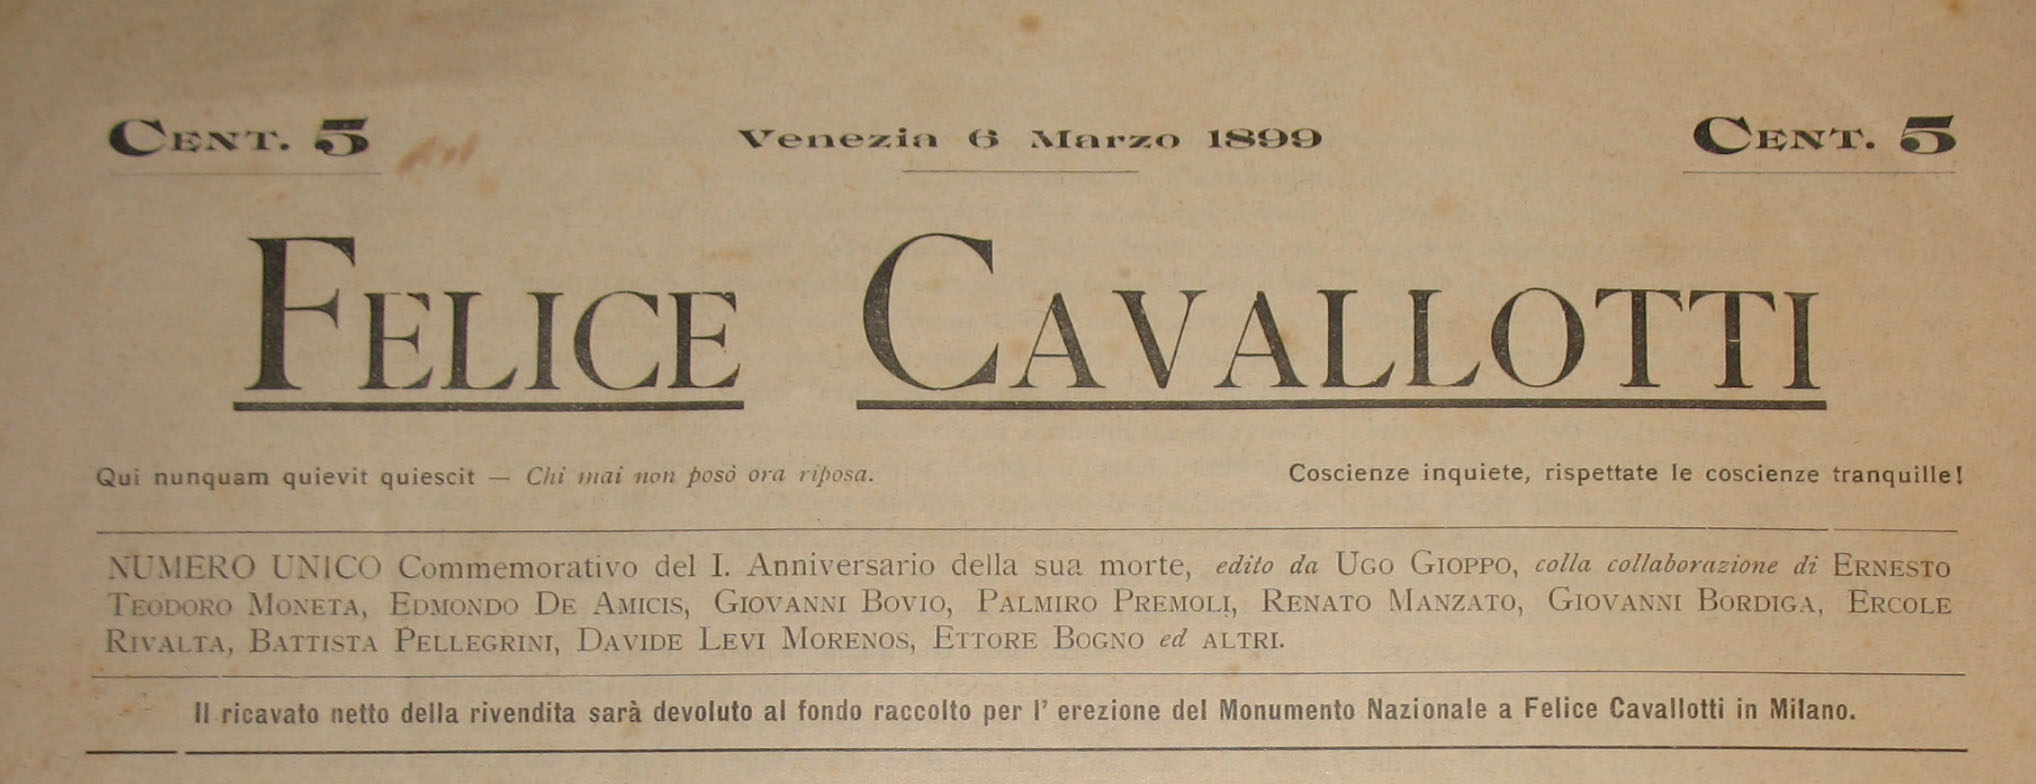 Numero unico dedicato a Felice Cavallotti, 6 marzo 1899